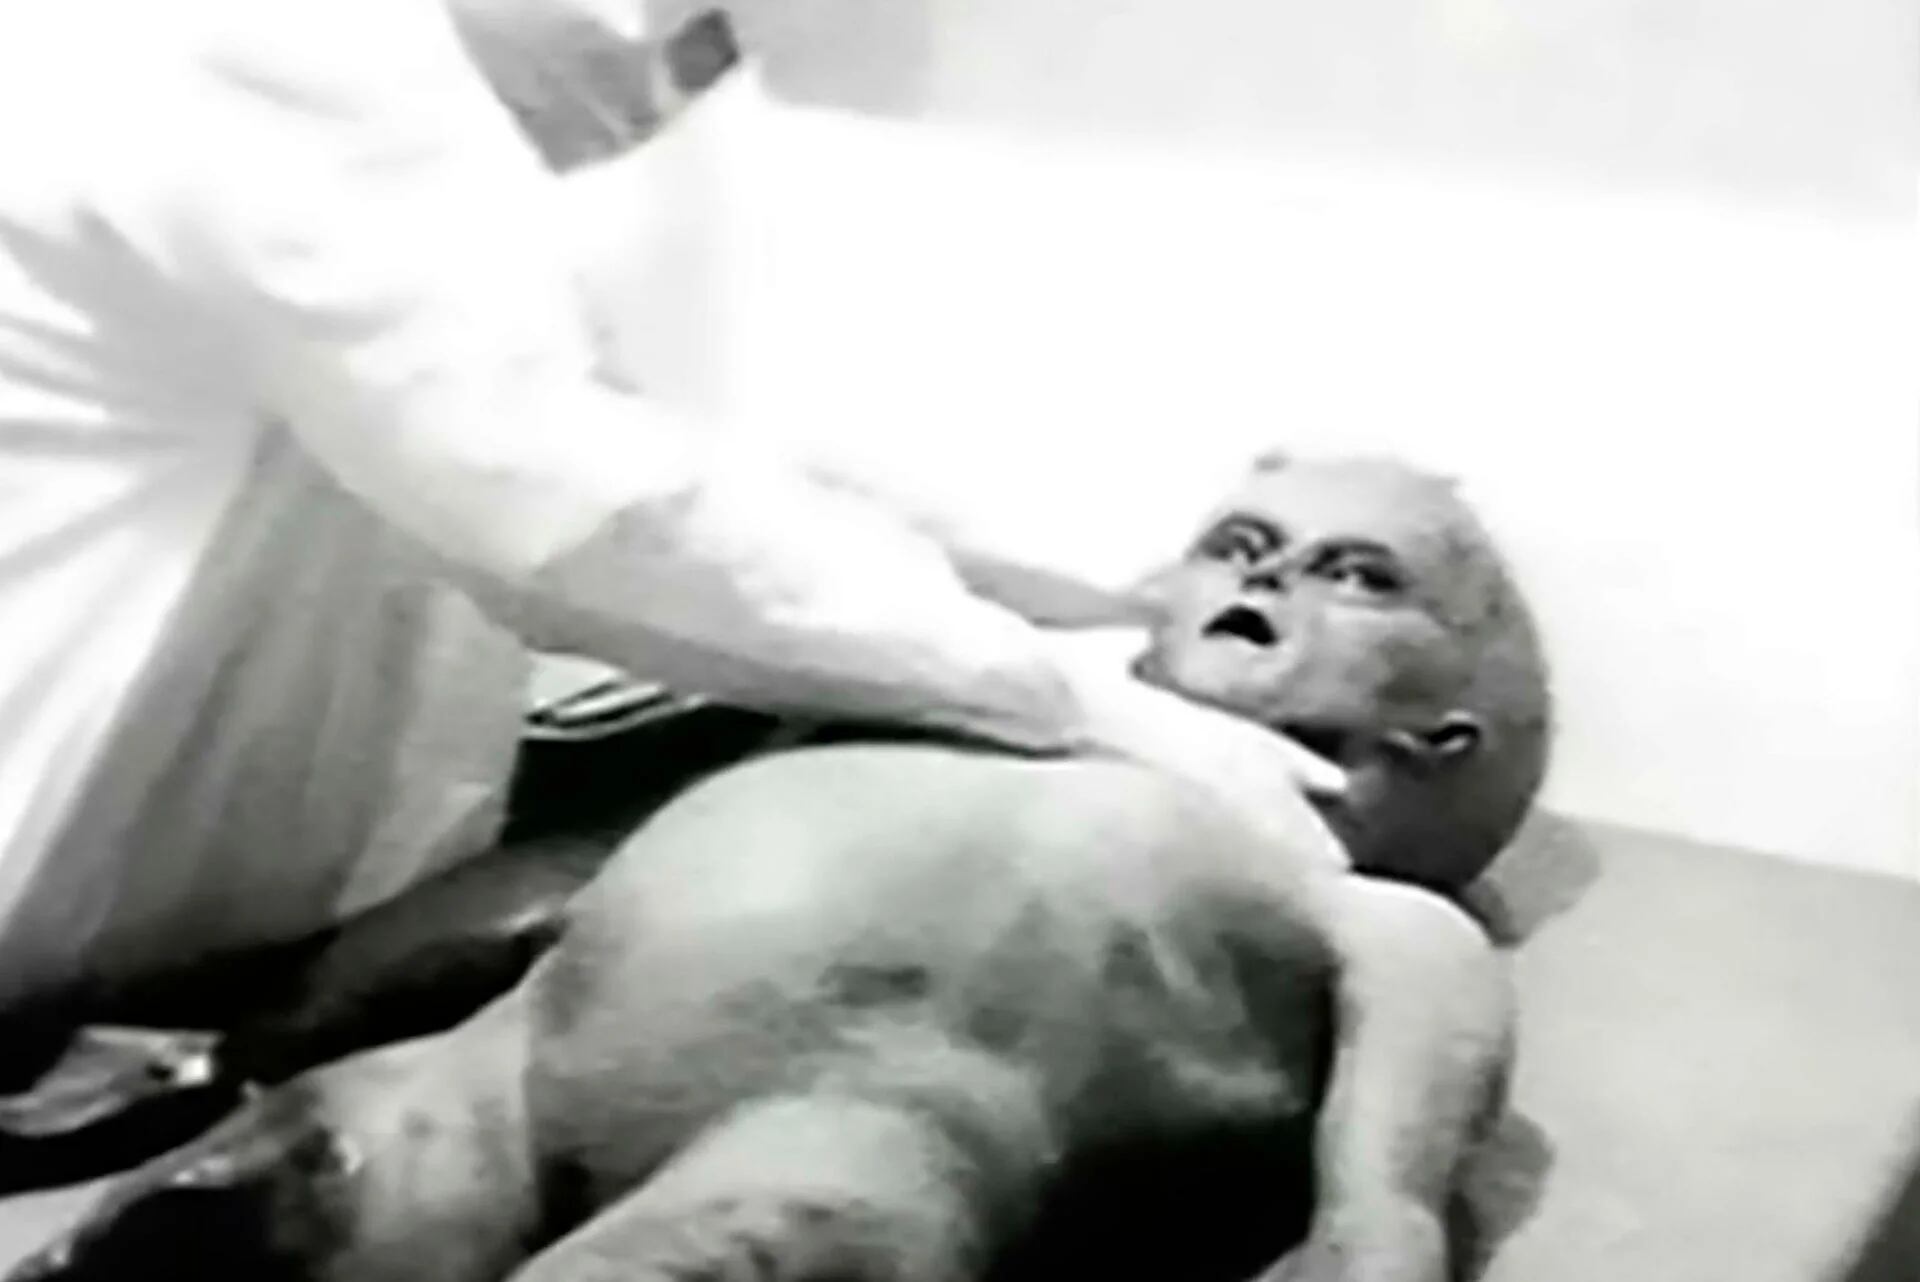 En 1995, un experto británico en efectos especiales para cine, John Humphreys fabricó unos muñecos y filmó en blanco y negro la película supuestamente antigua sobre una autopsia de un extraterrestre. Once años después confesó la verdad